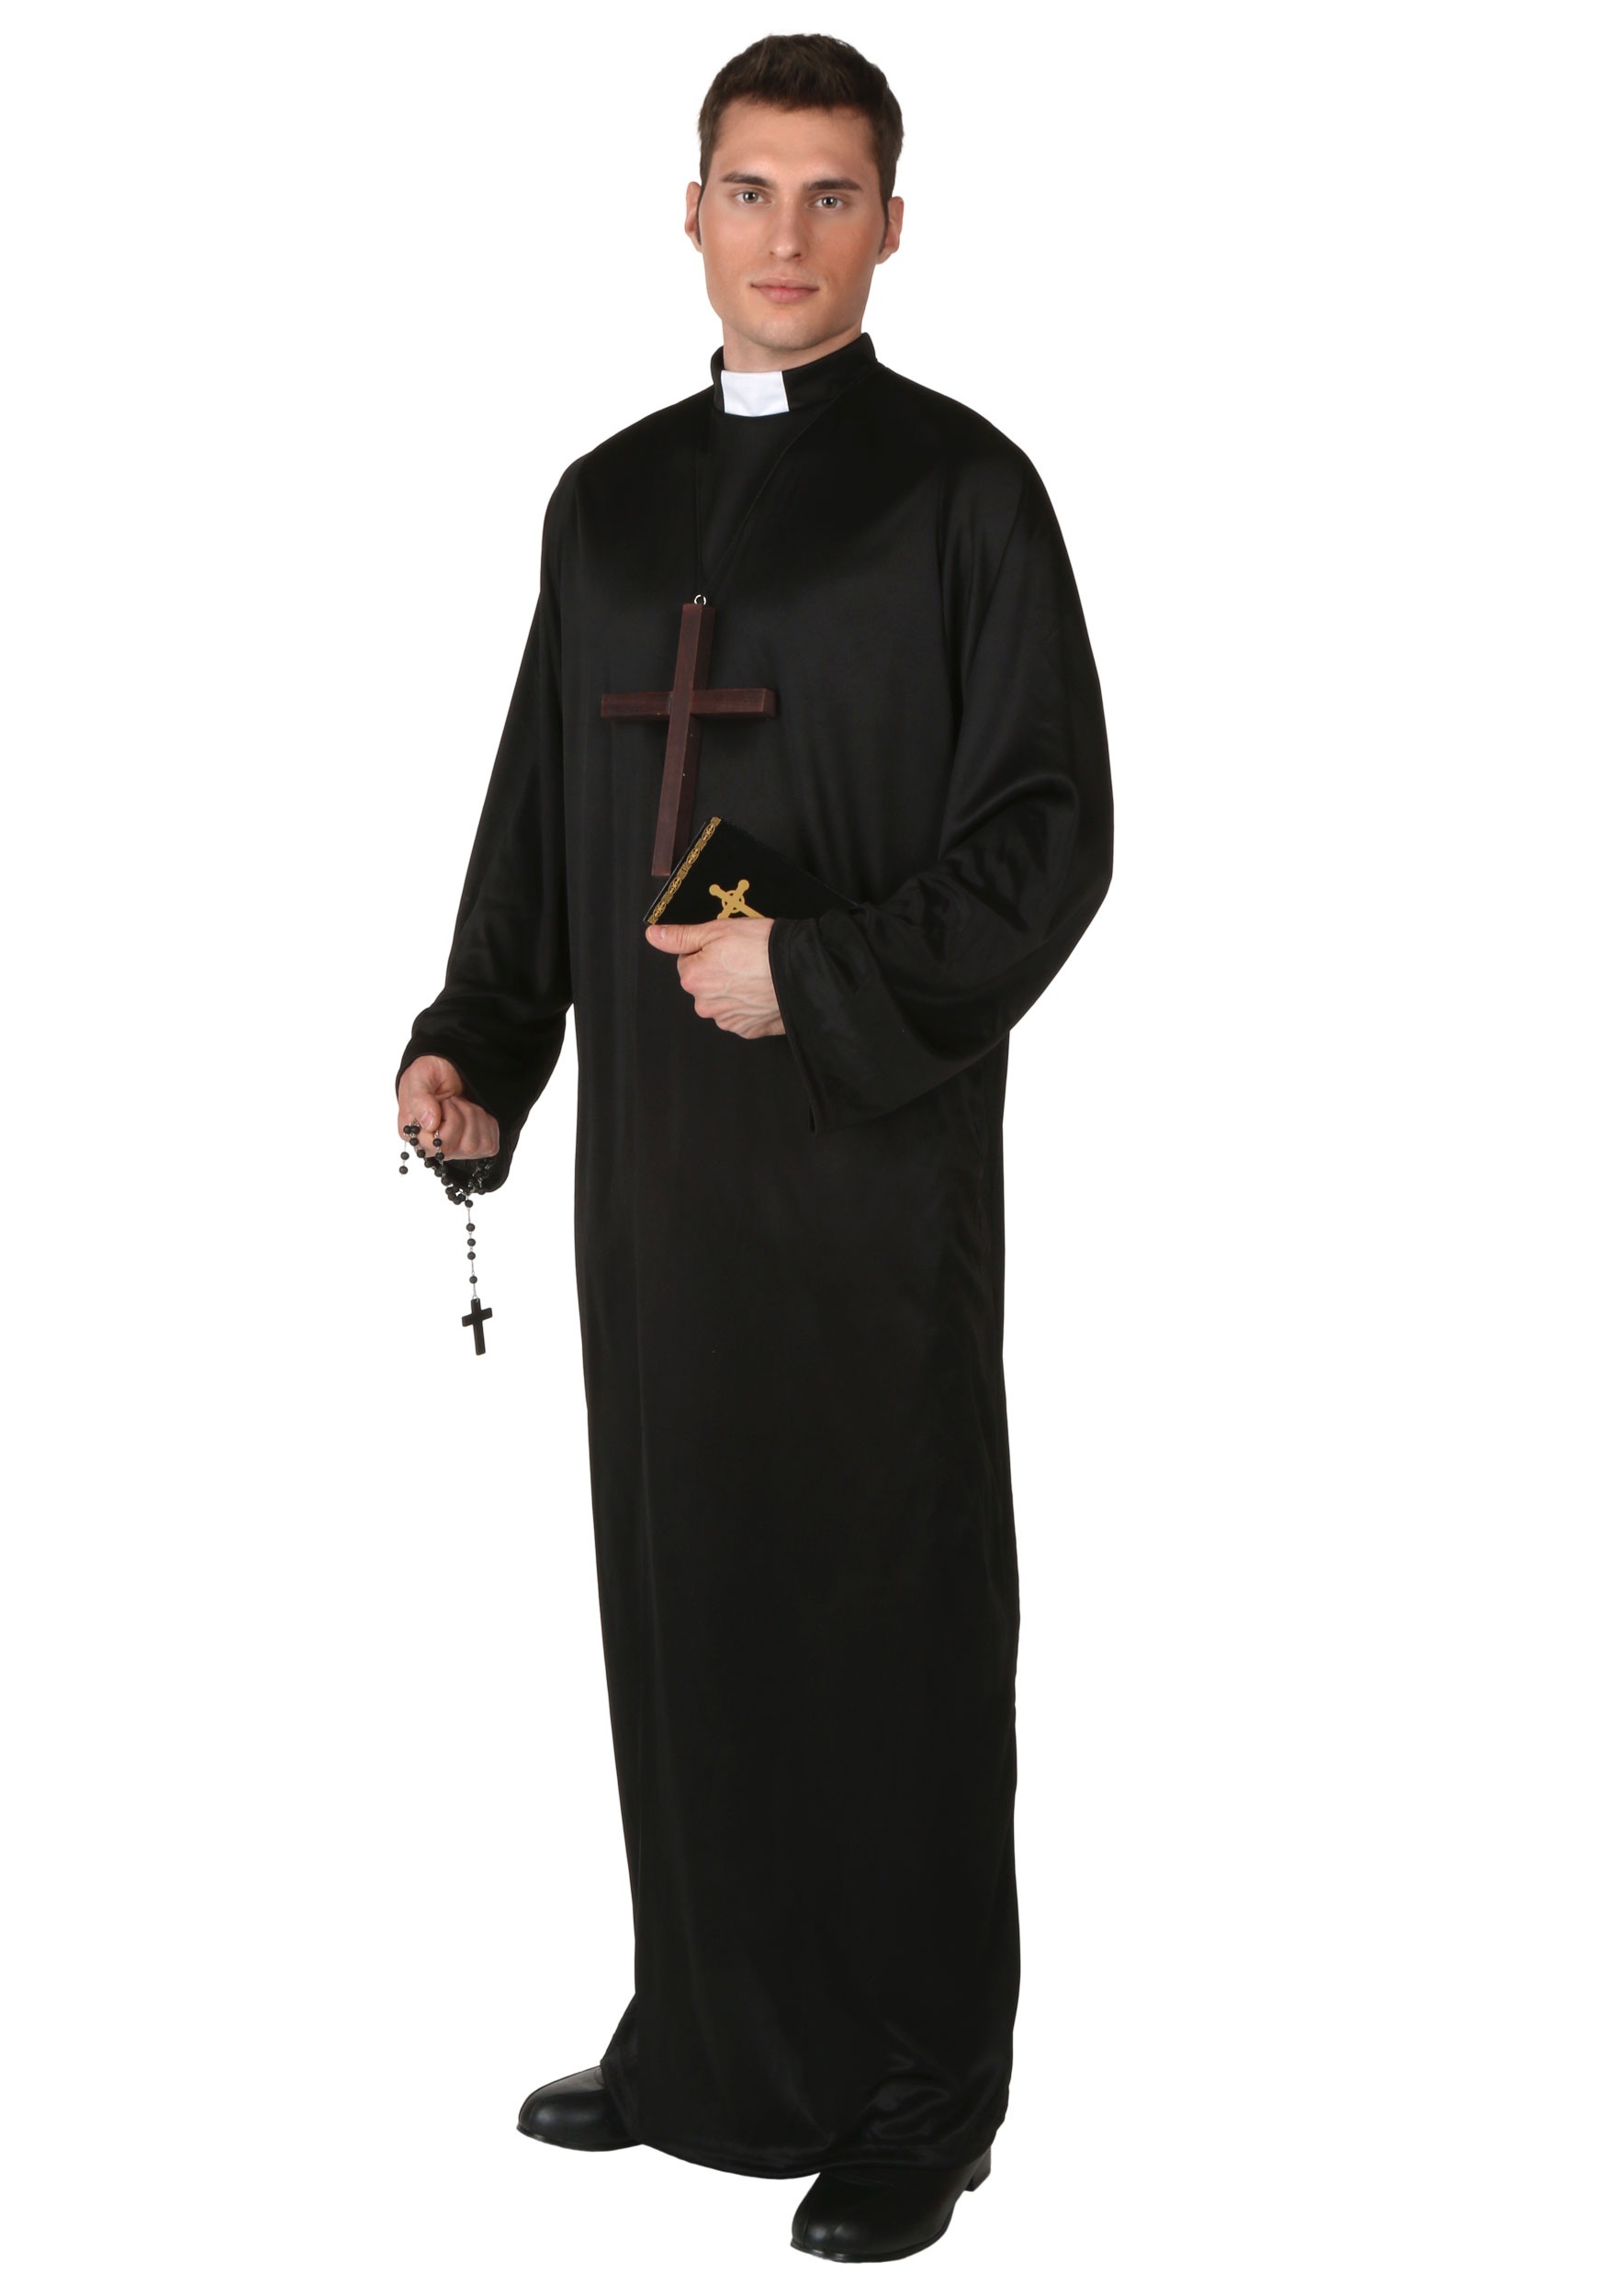 Priest Uniform 9